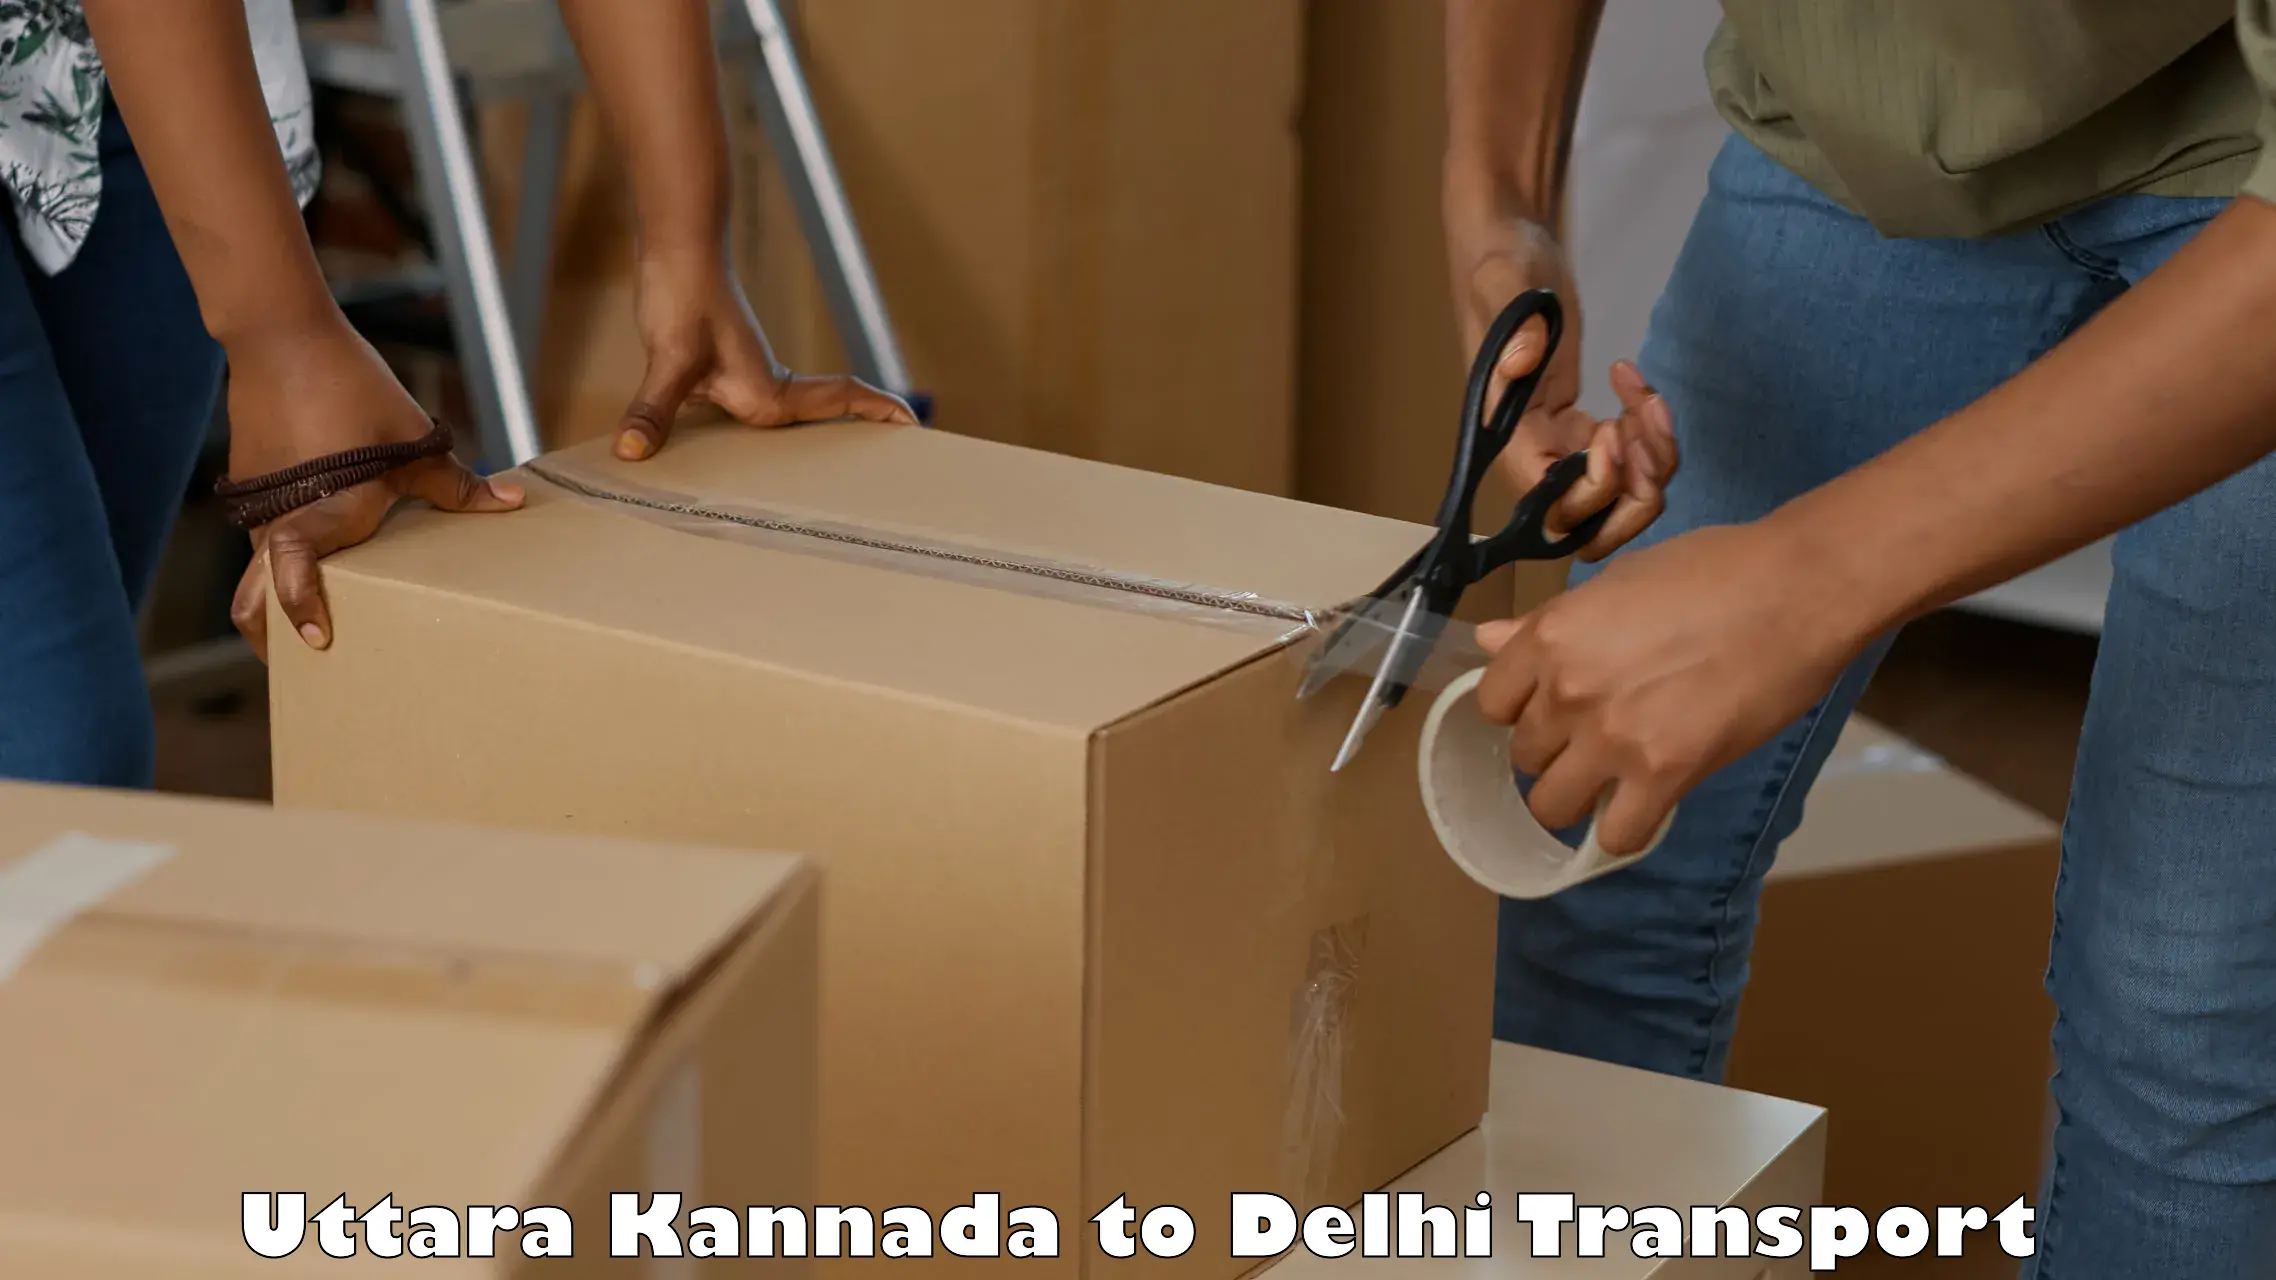 Inland transportation services Uttara Kannada to Delhi